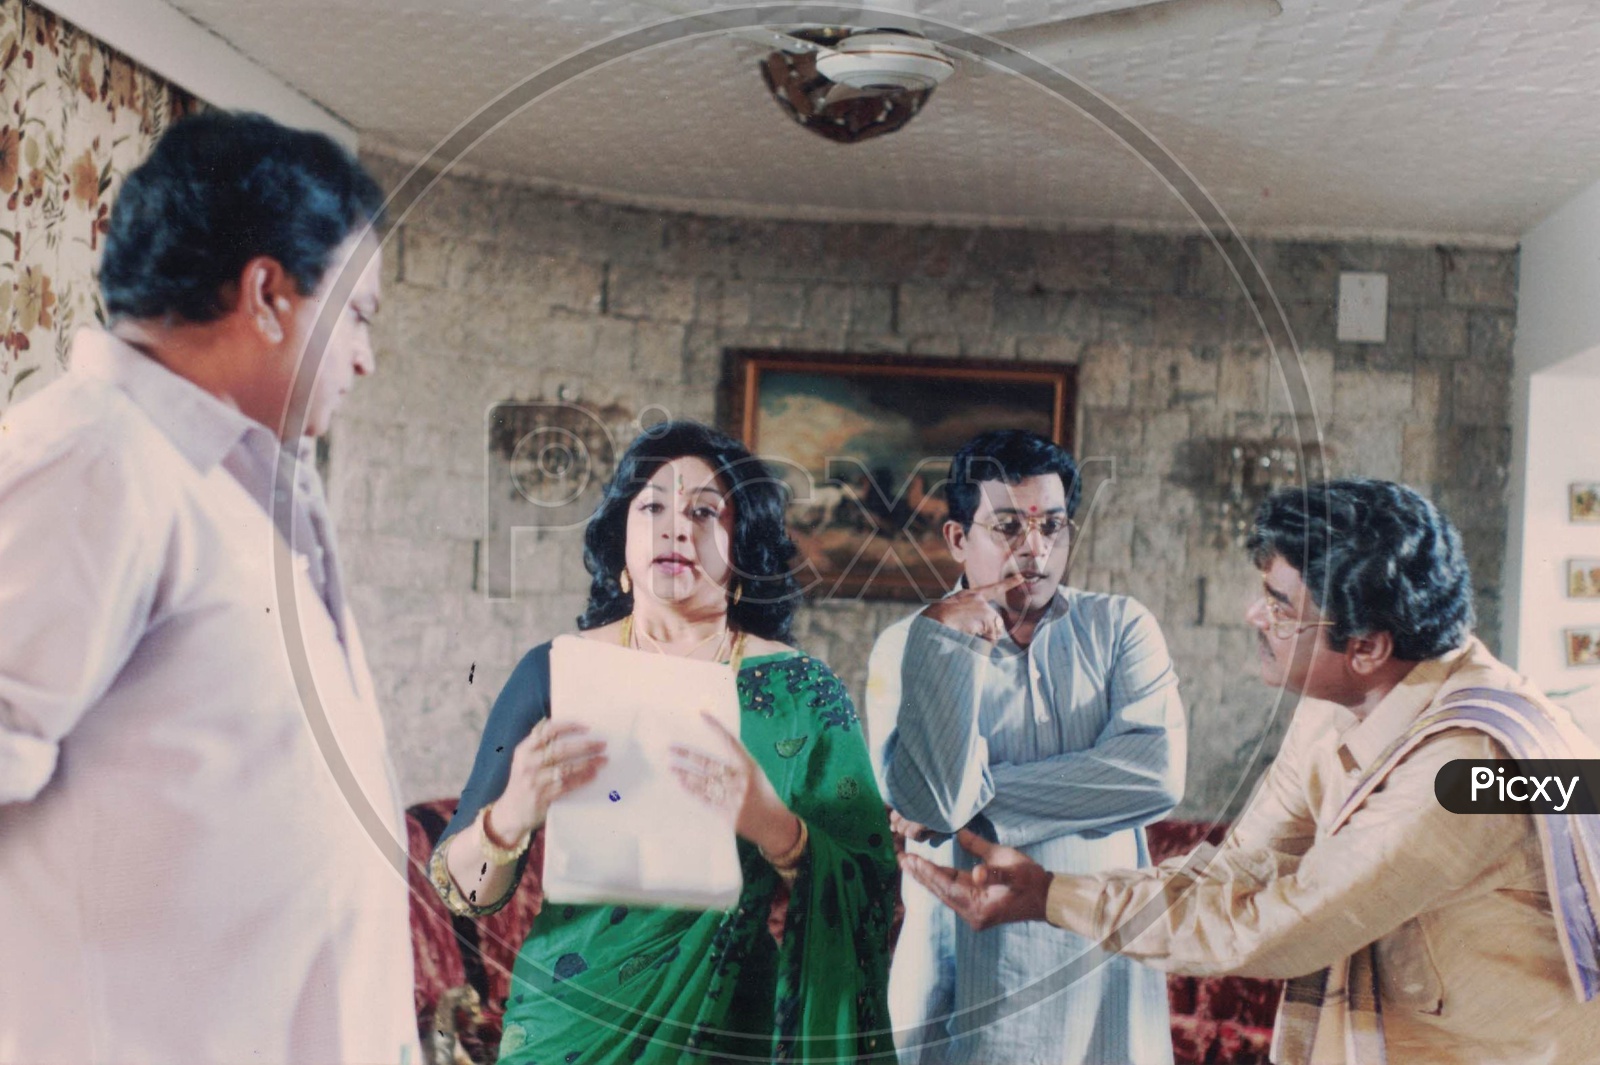 Kota Srinivasa Rao and Lakshmi in Alluda Majaka Movie